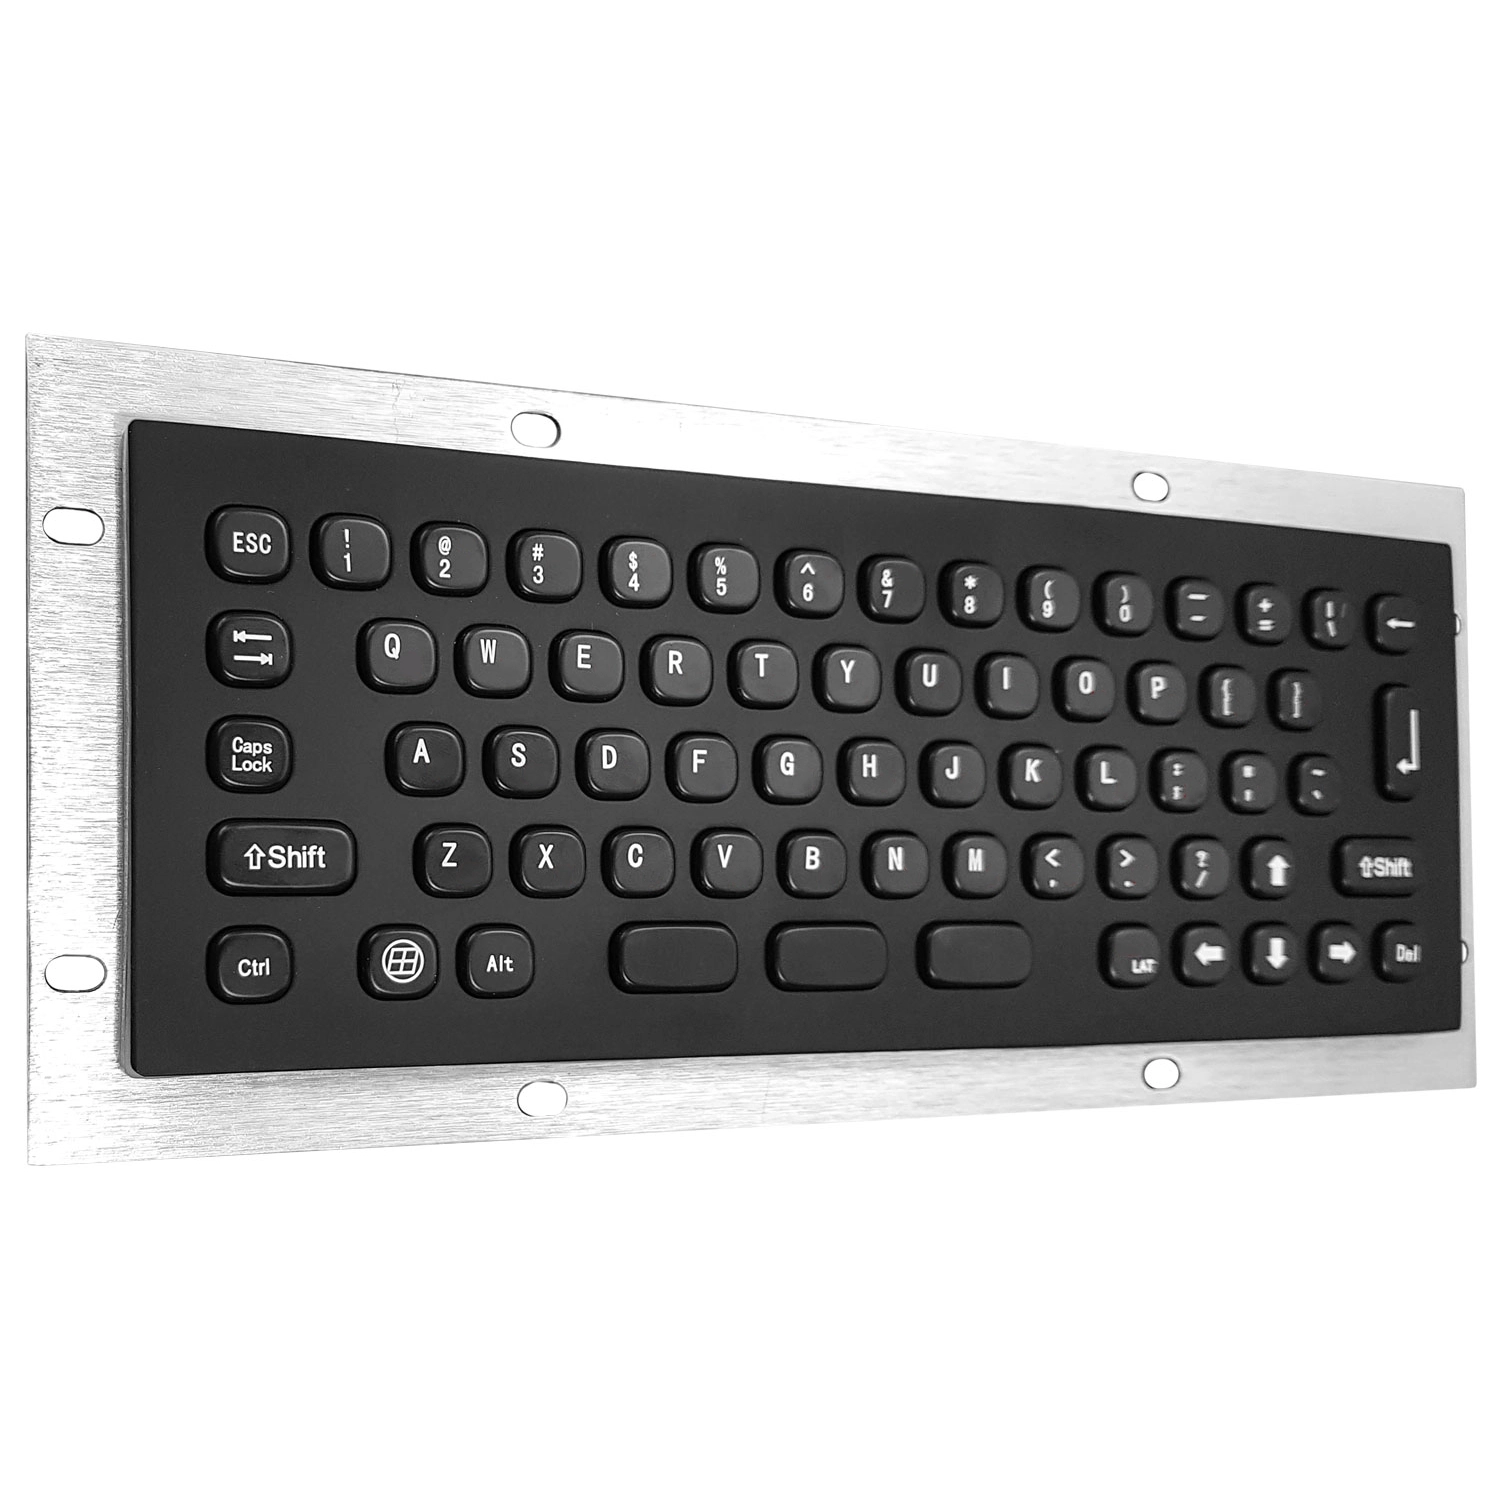 Rugged panel mount keyboard KB-000-NW0S002 MINI